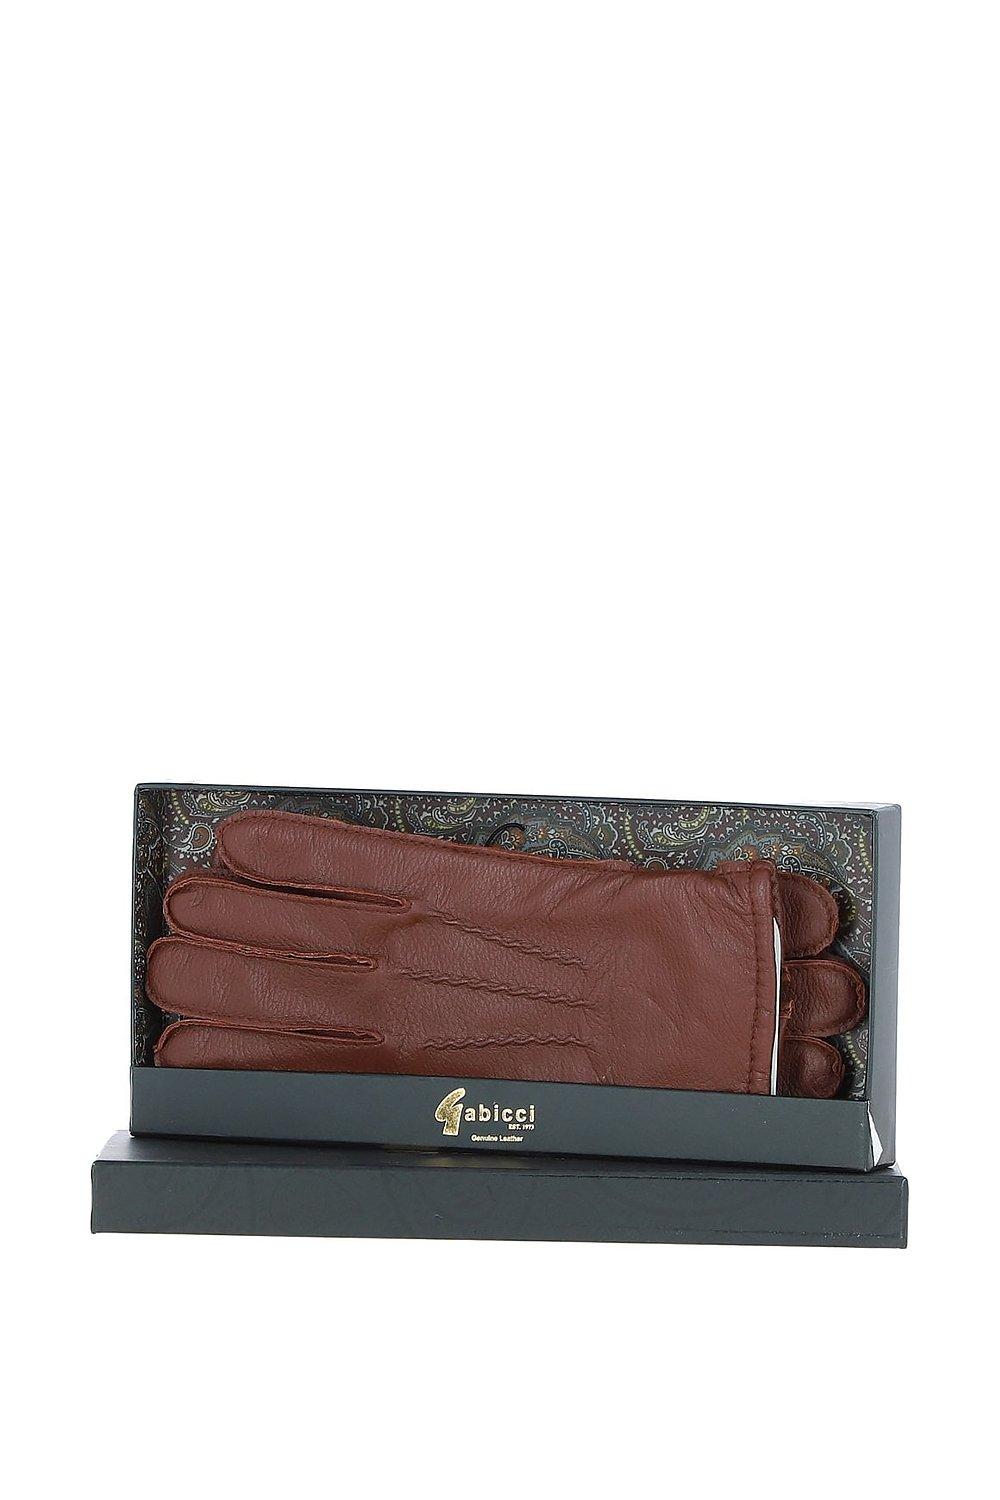 перчатки мужские кожаные yimei Перчатки '520' из мягкой кожи ягненка и натуральной кожи с флисовой подкладкой GABICCI, коричневый